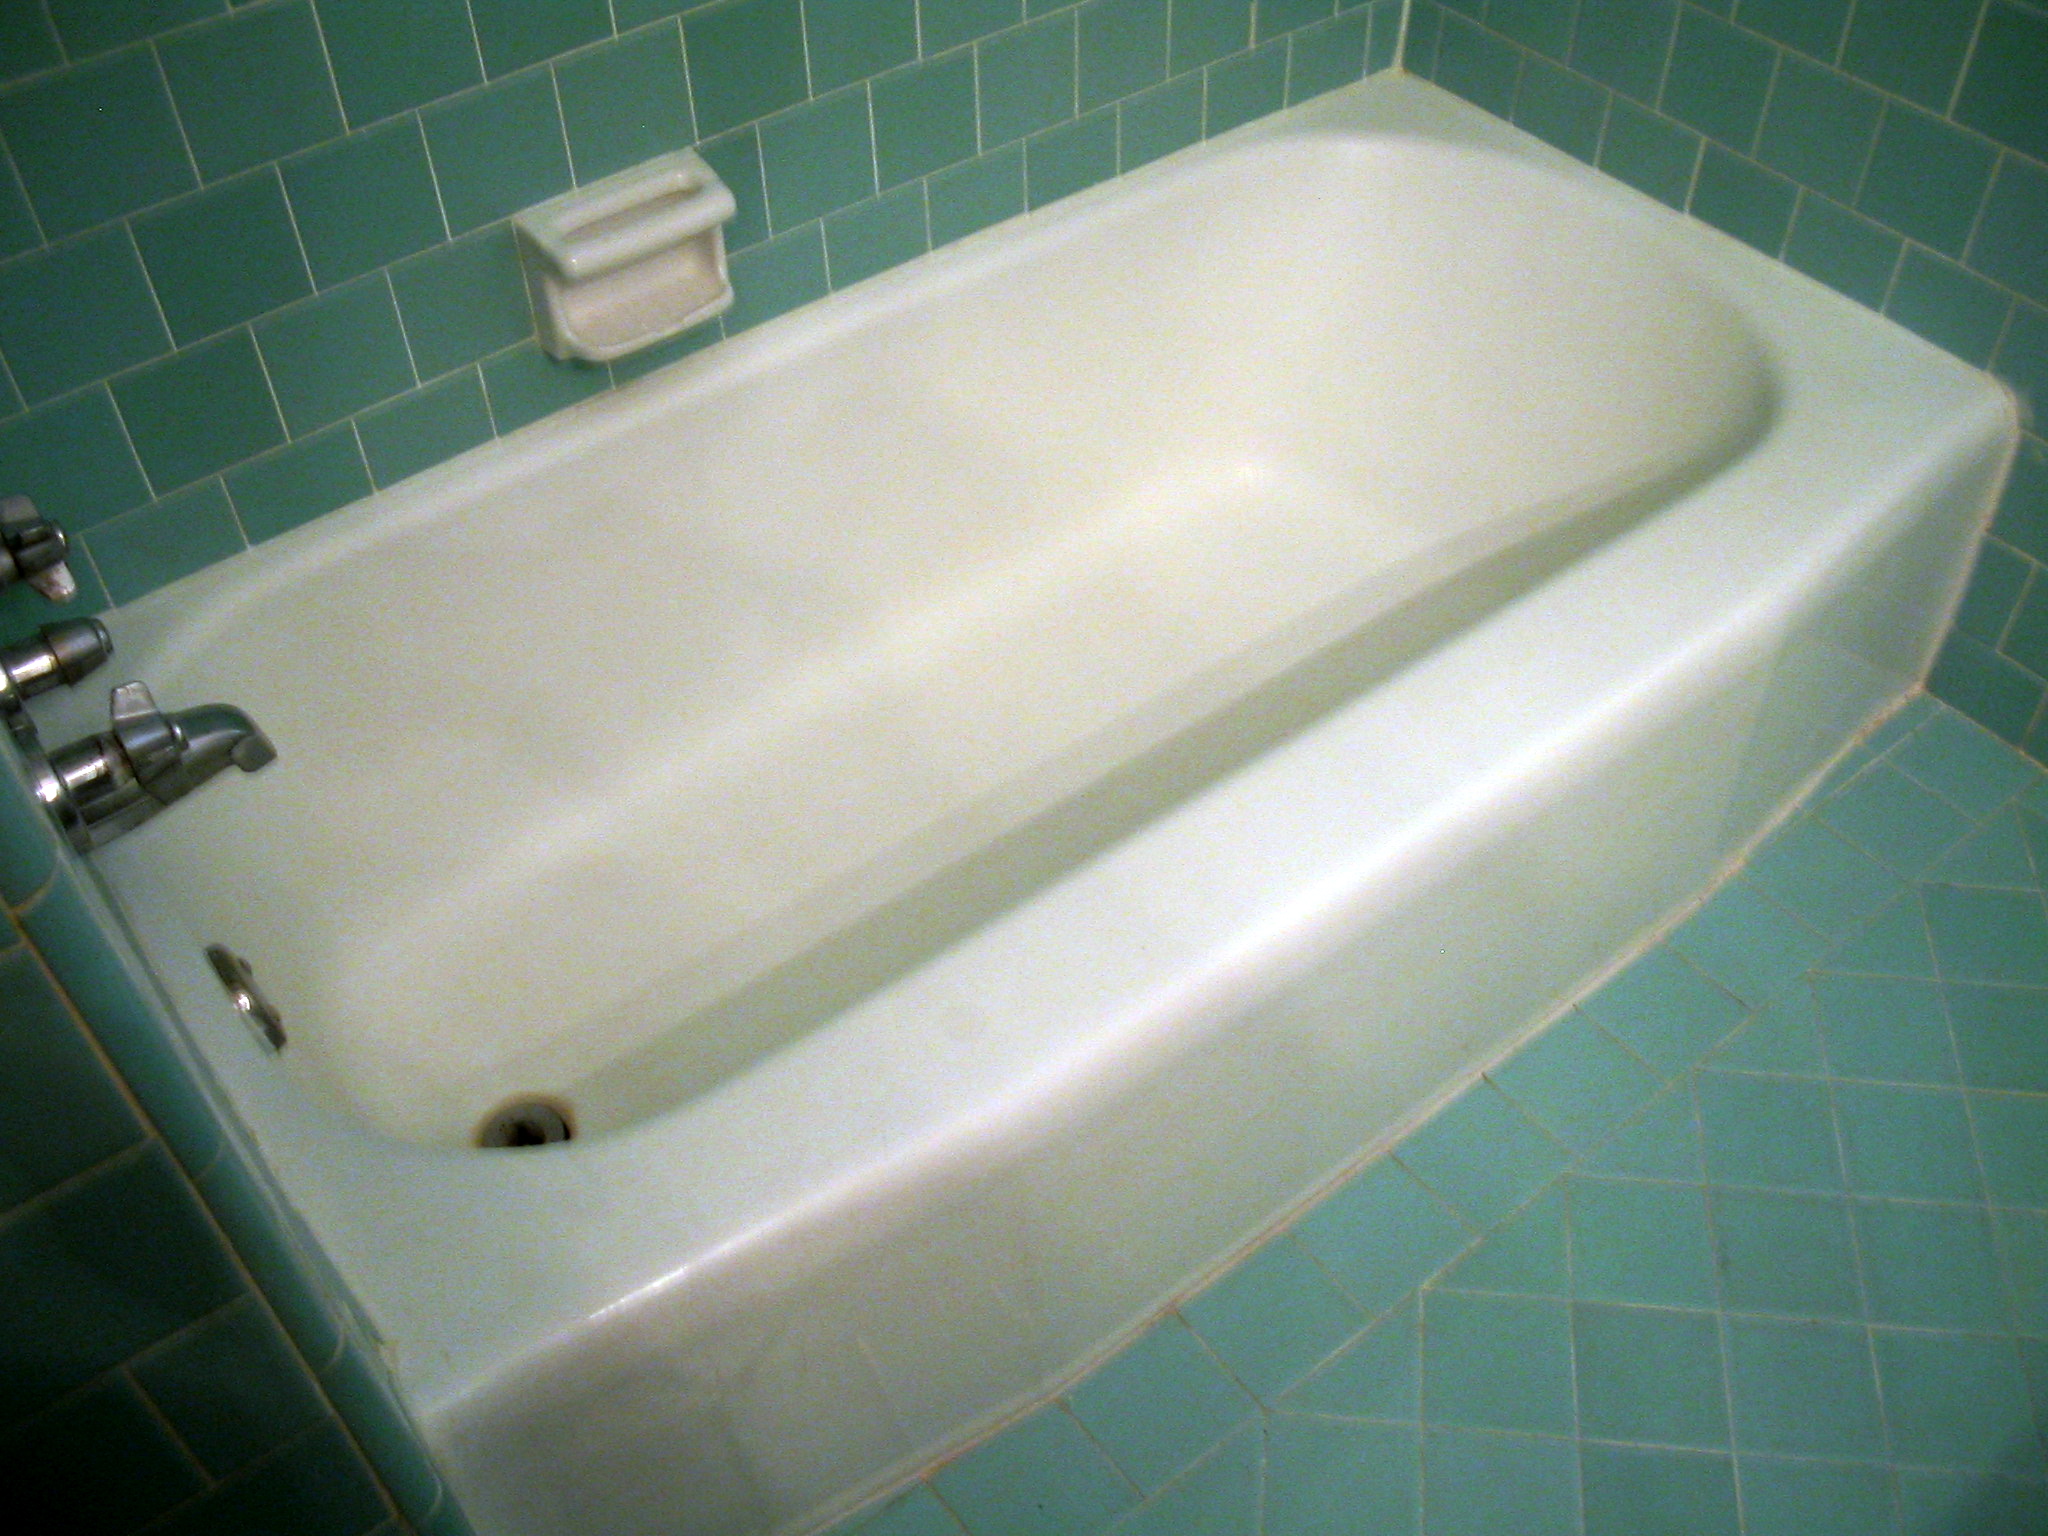 a white bath tub sitting in a tiled bathroom